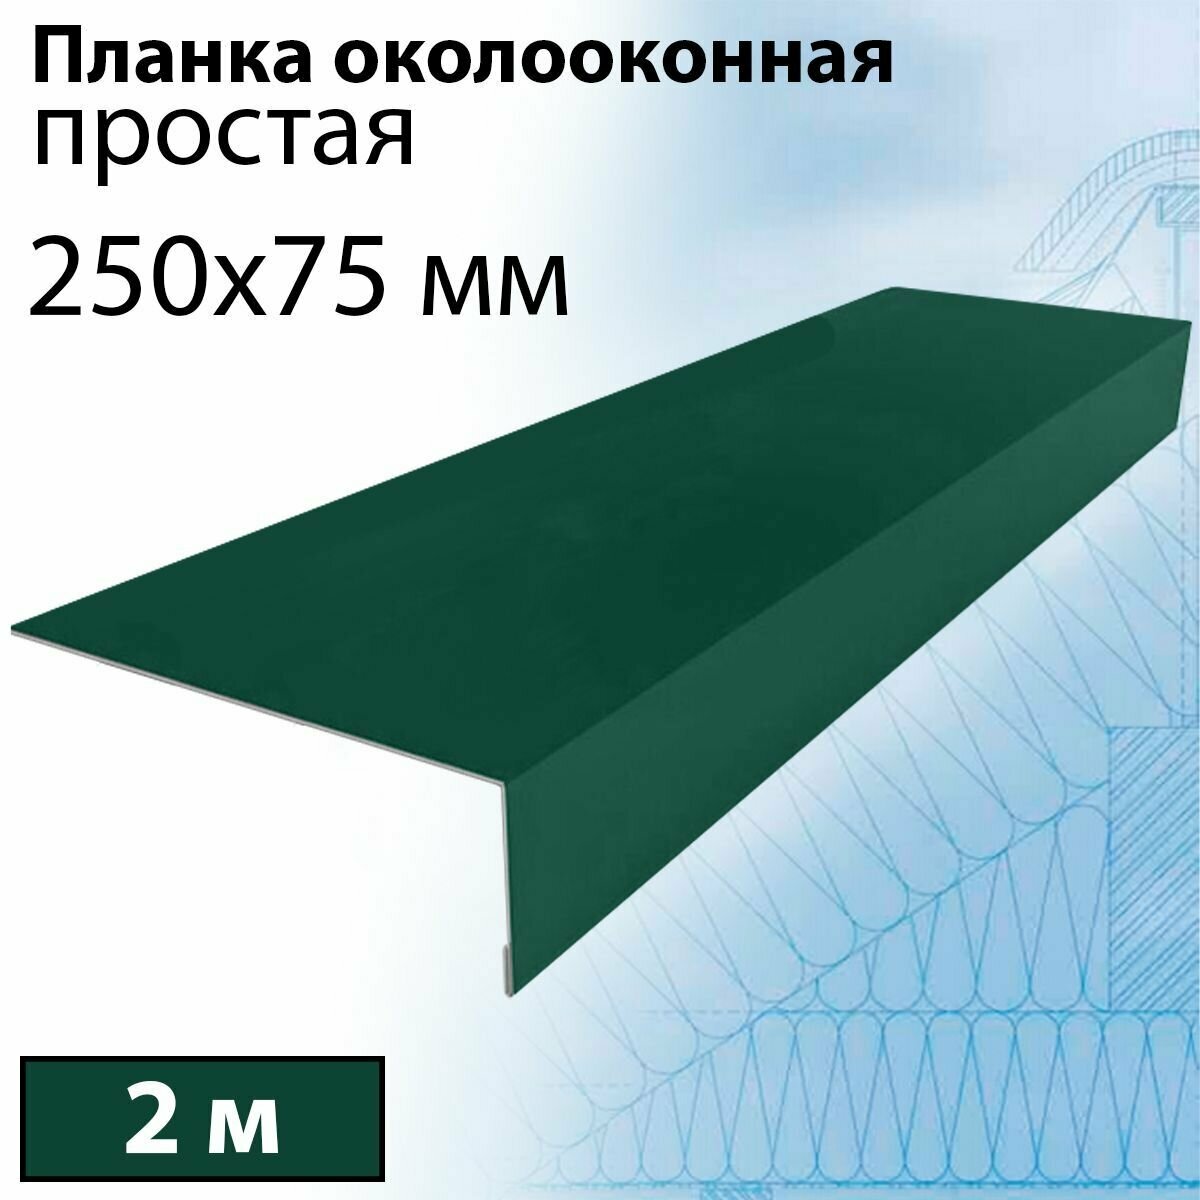 Планка околооконная простая 2 м (250х75 мм) 5 штук Планка лобовая металлическая (RAL 6005) зеленый - фотография № 1